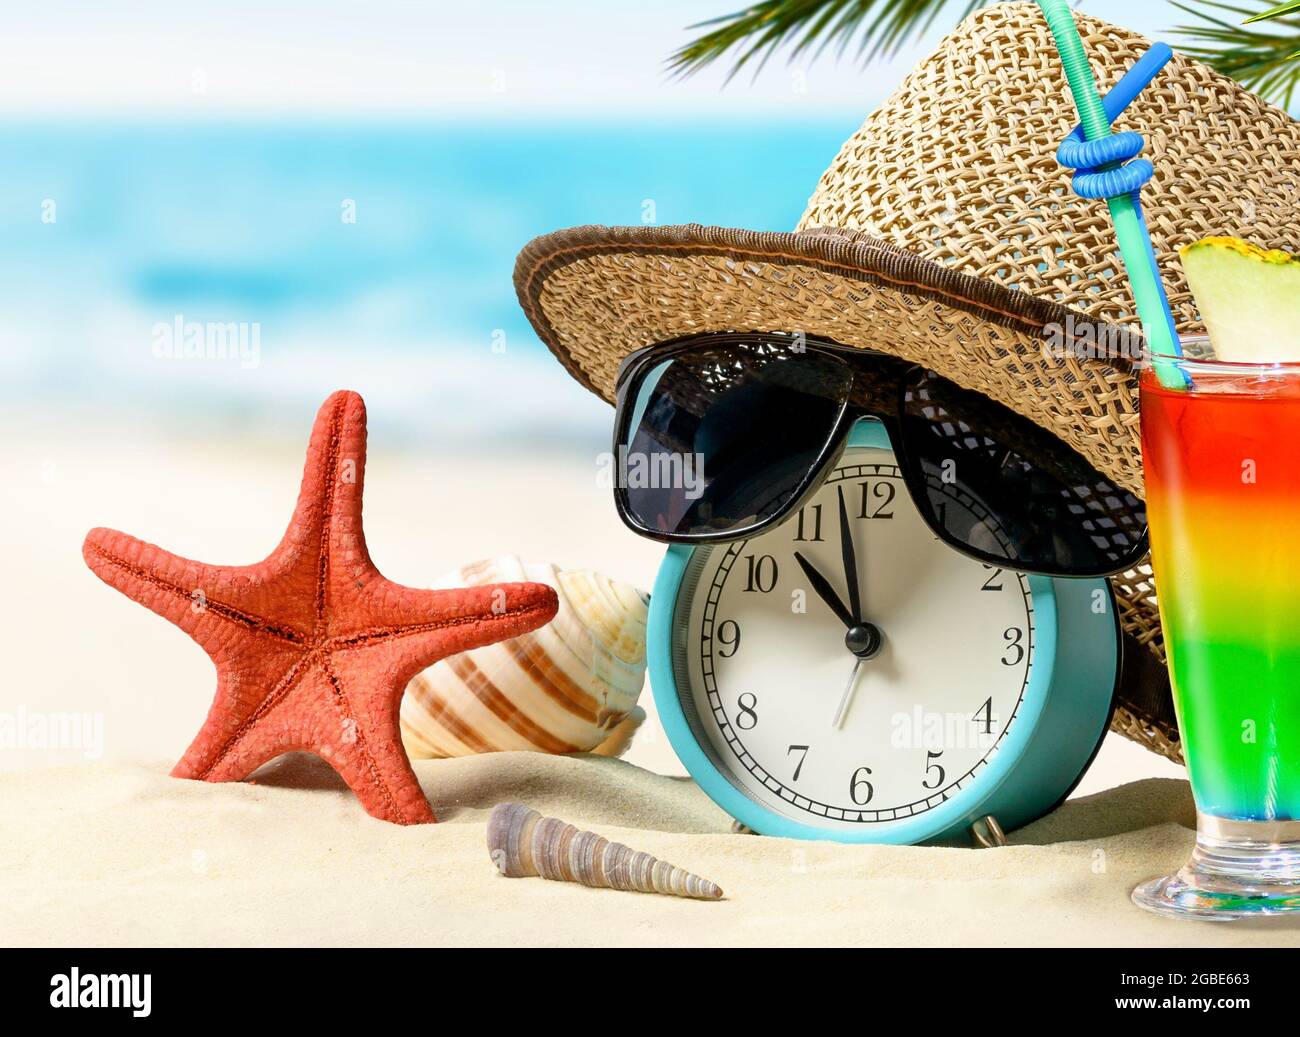 Offres de dernière minute. Concept de vacances d'été. Le temps de se  détendre. Réveil avec chapeau de paille, étoiles de mer, cocktail  arc-en-ciel sur la plage de sable et mer Backgr Photo